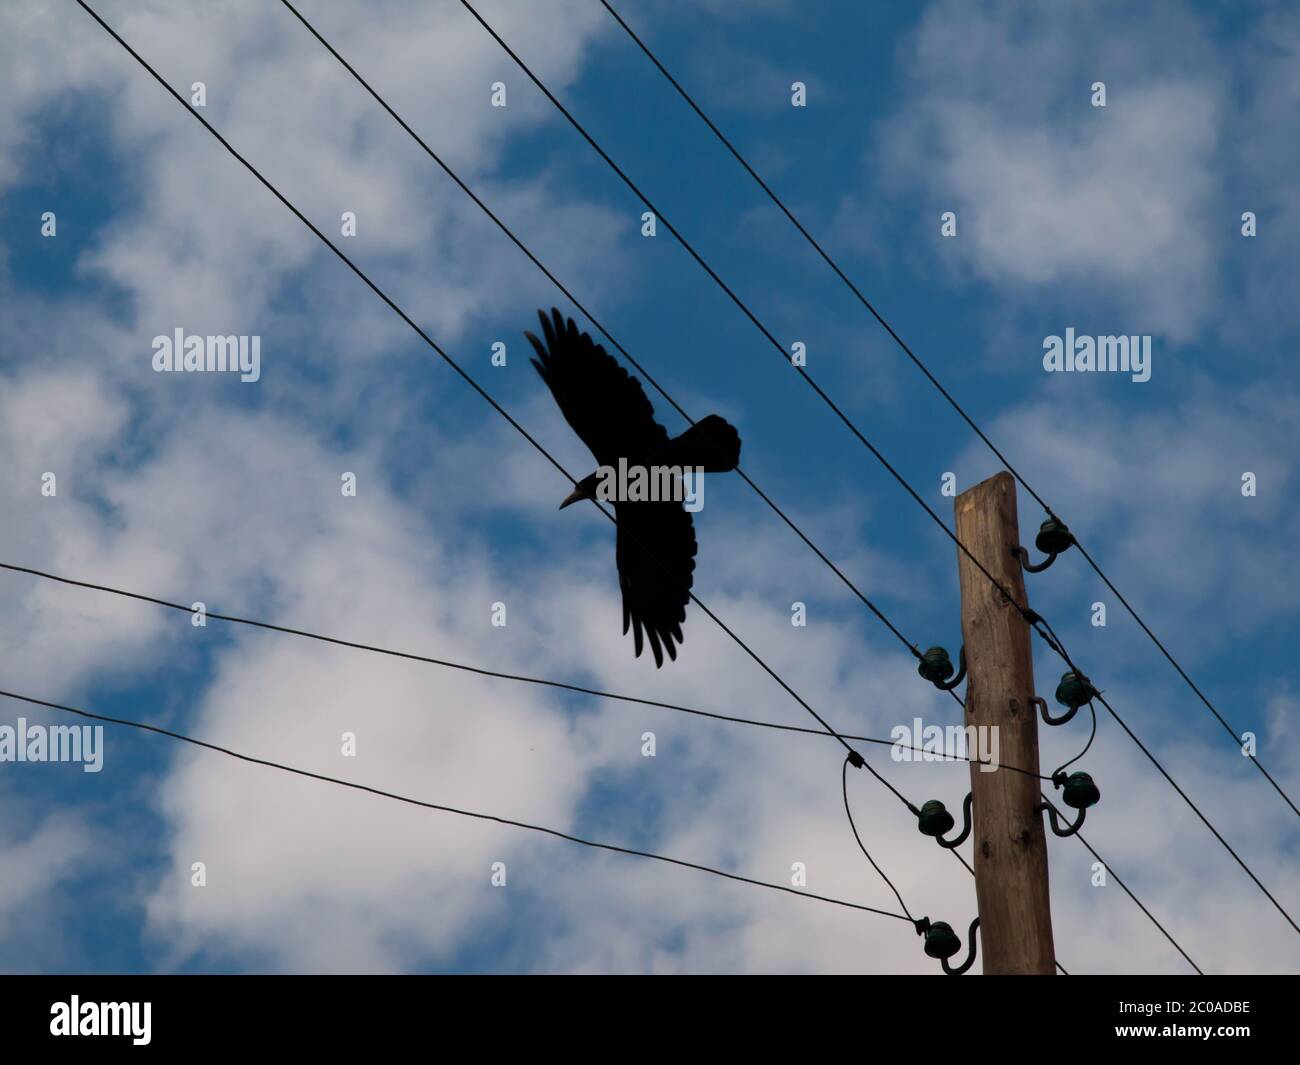 Silhouette noire de corbeau volant derrière les lignes électriques Banque D'Images